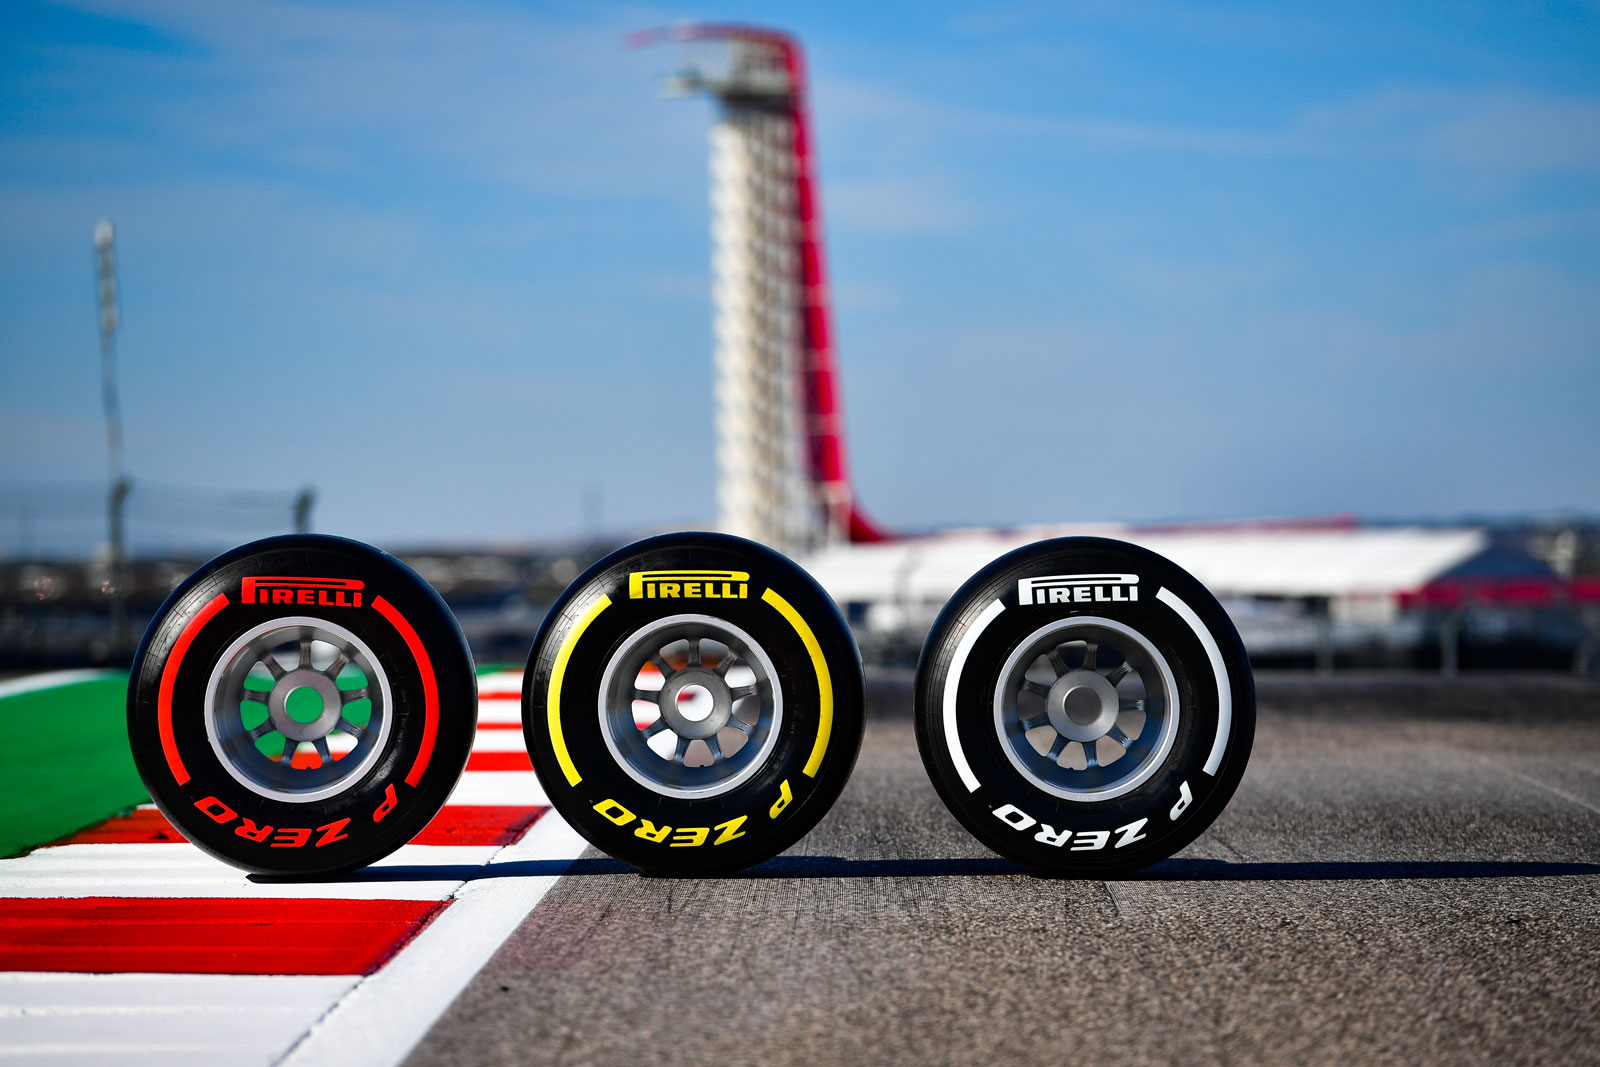 2019年f1のタイヤのルール 決勝レースと予選とフリー走行での使用本数 F1初心者ガイド